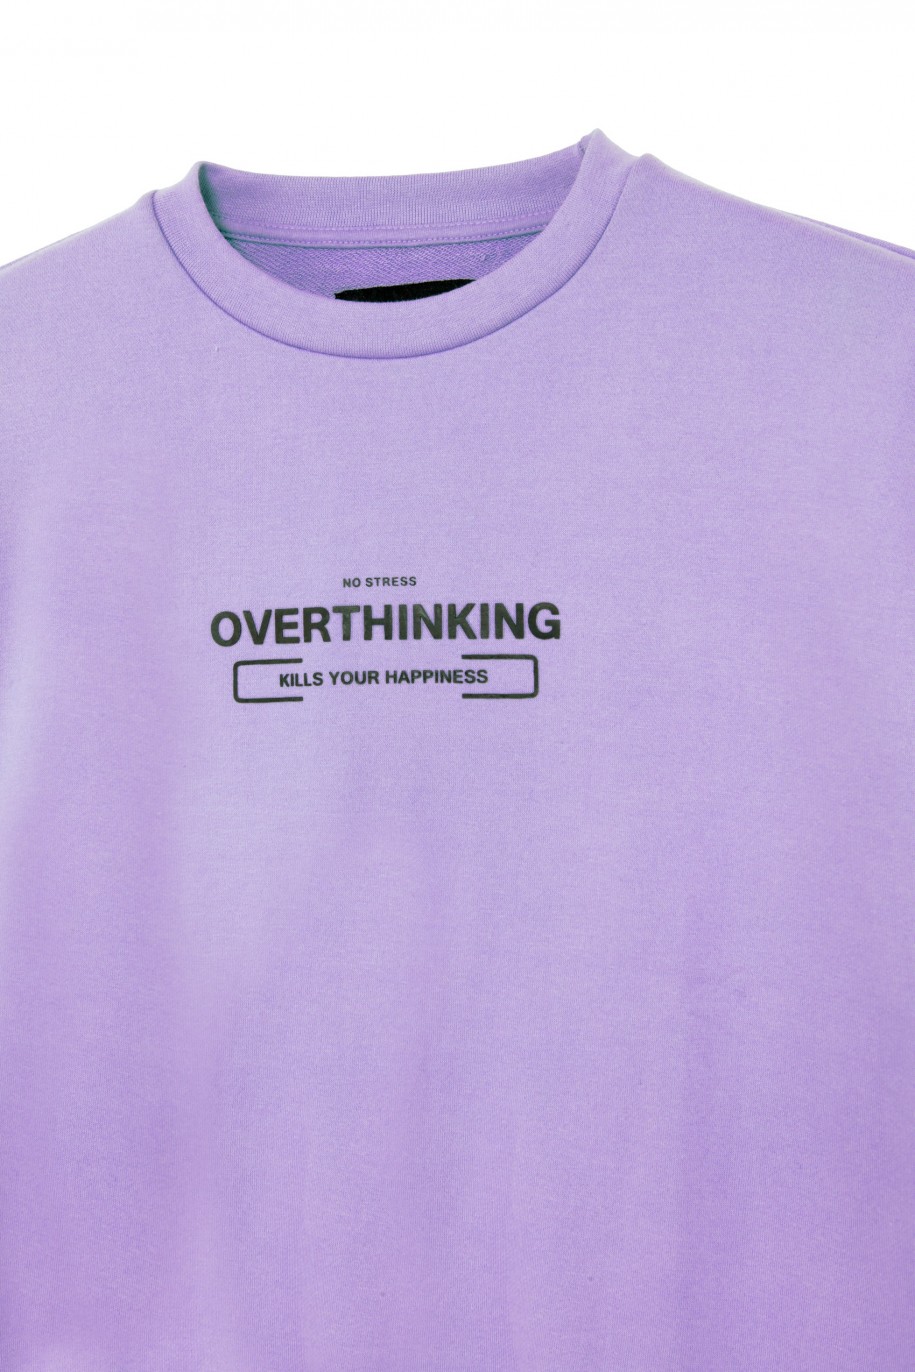 Fioletowa bluza dla chłopaka OVERTHINKING - 30686